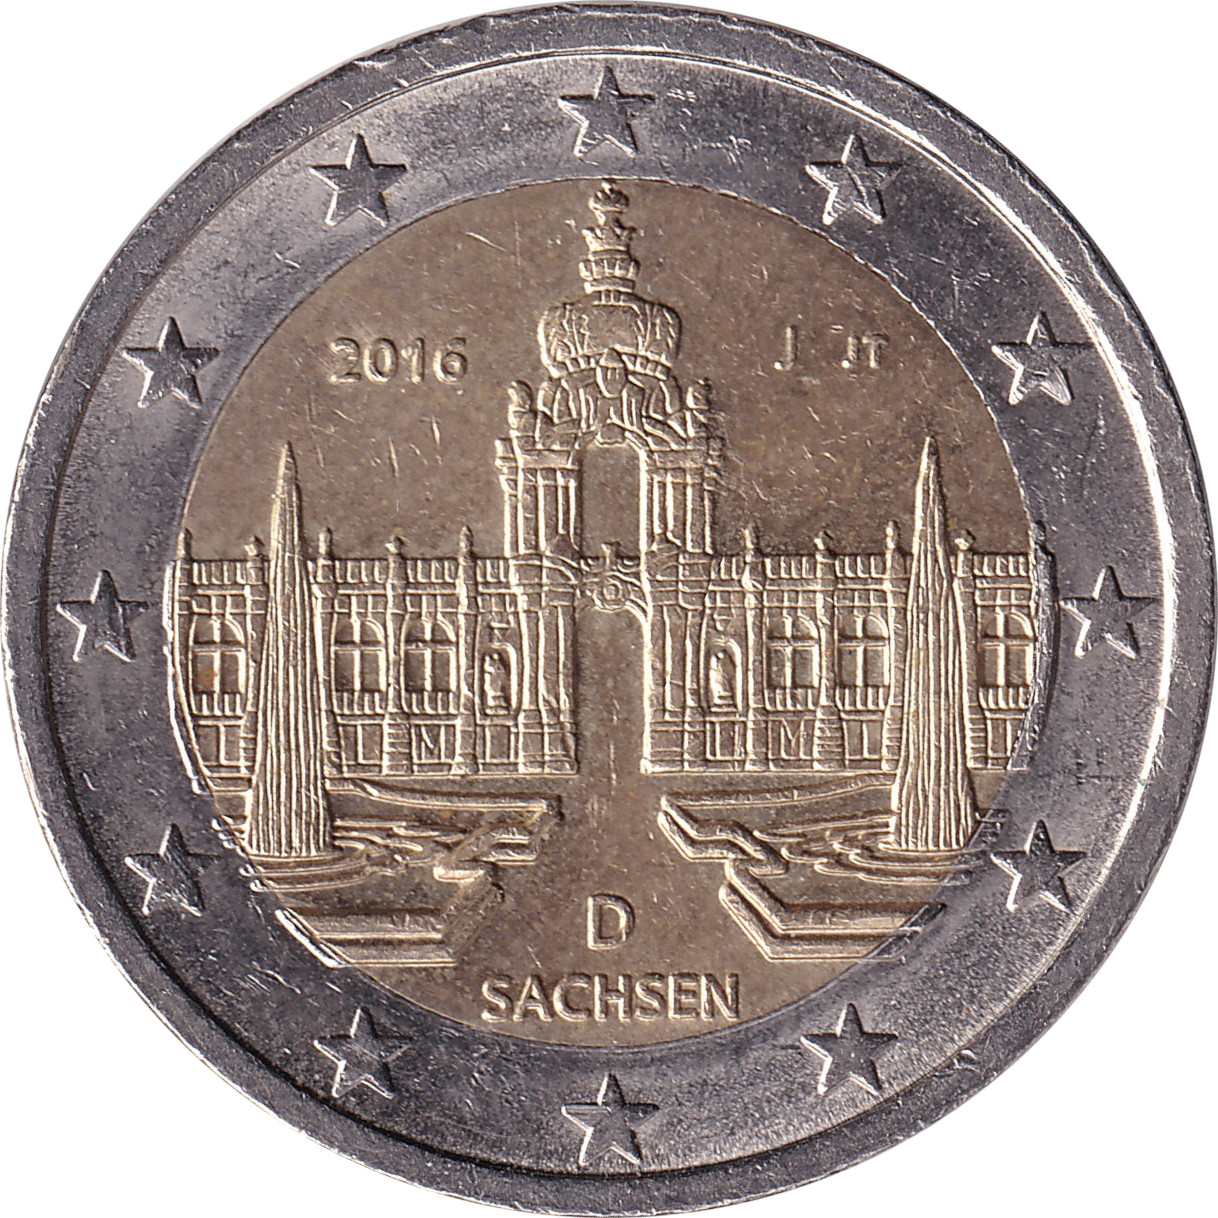 2 euro - Saxony